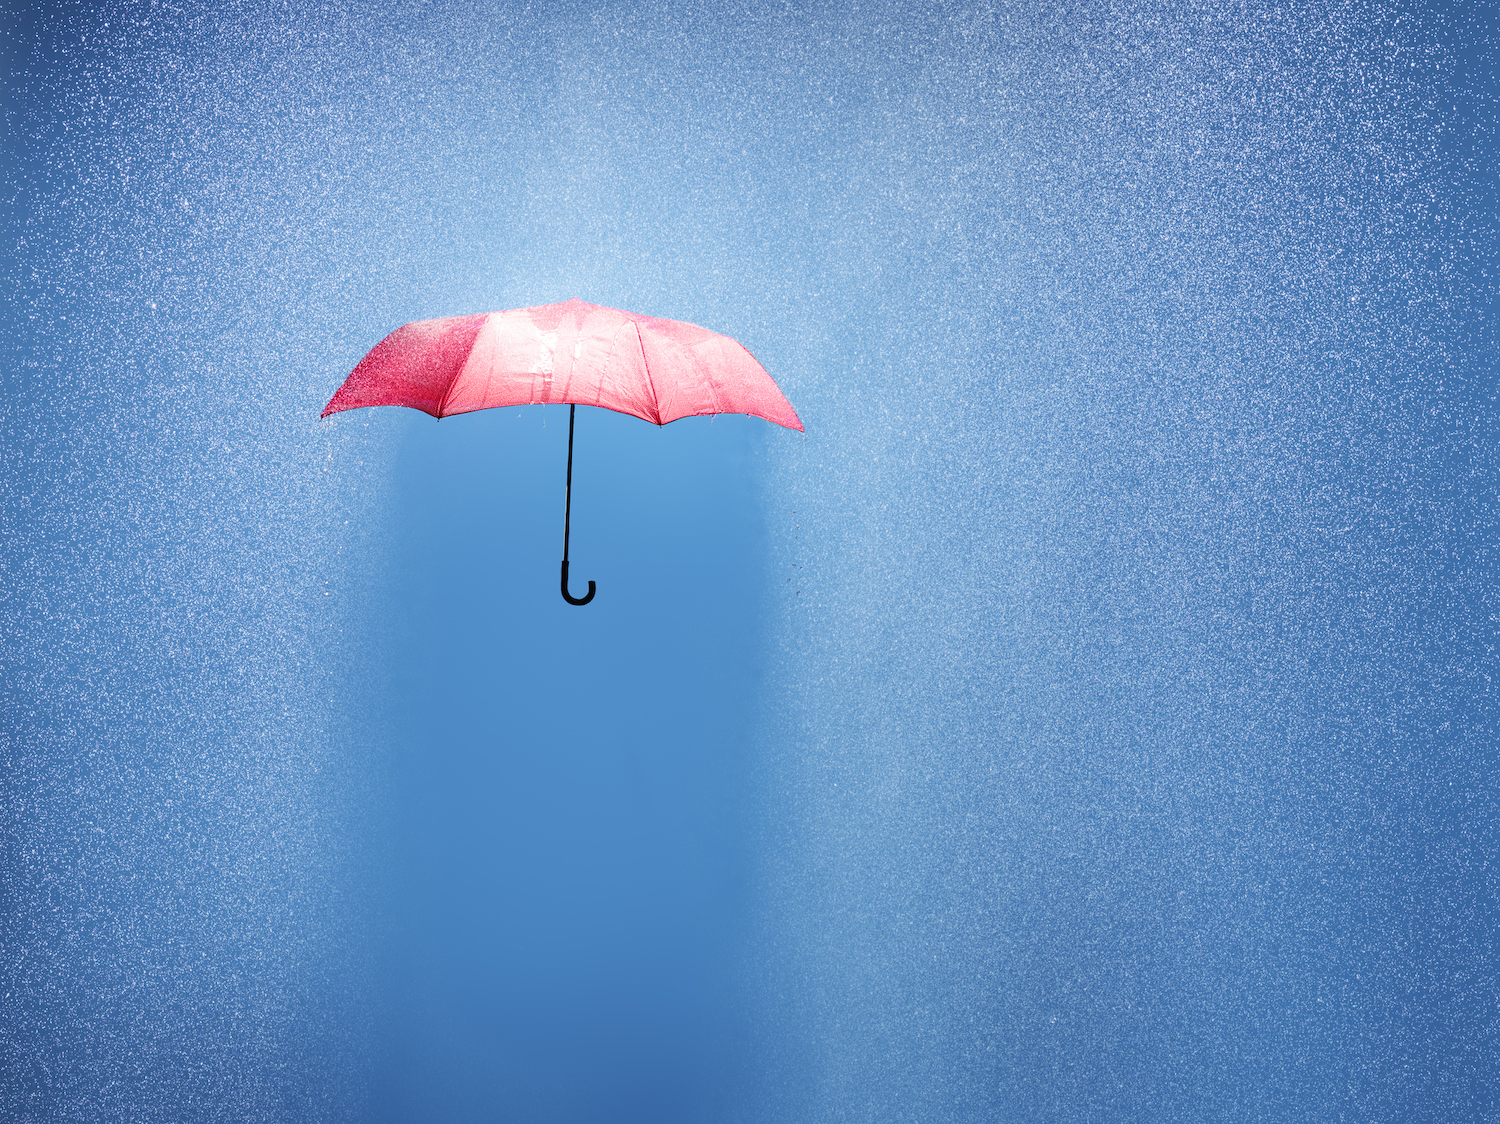 چتر صورتی در یک دوش باران، عکس مفهومی